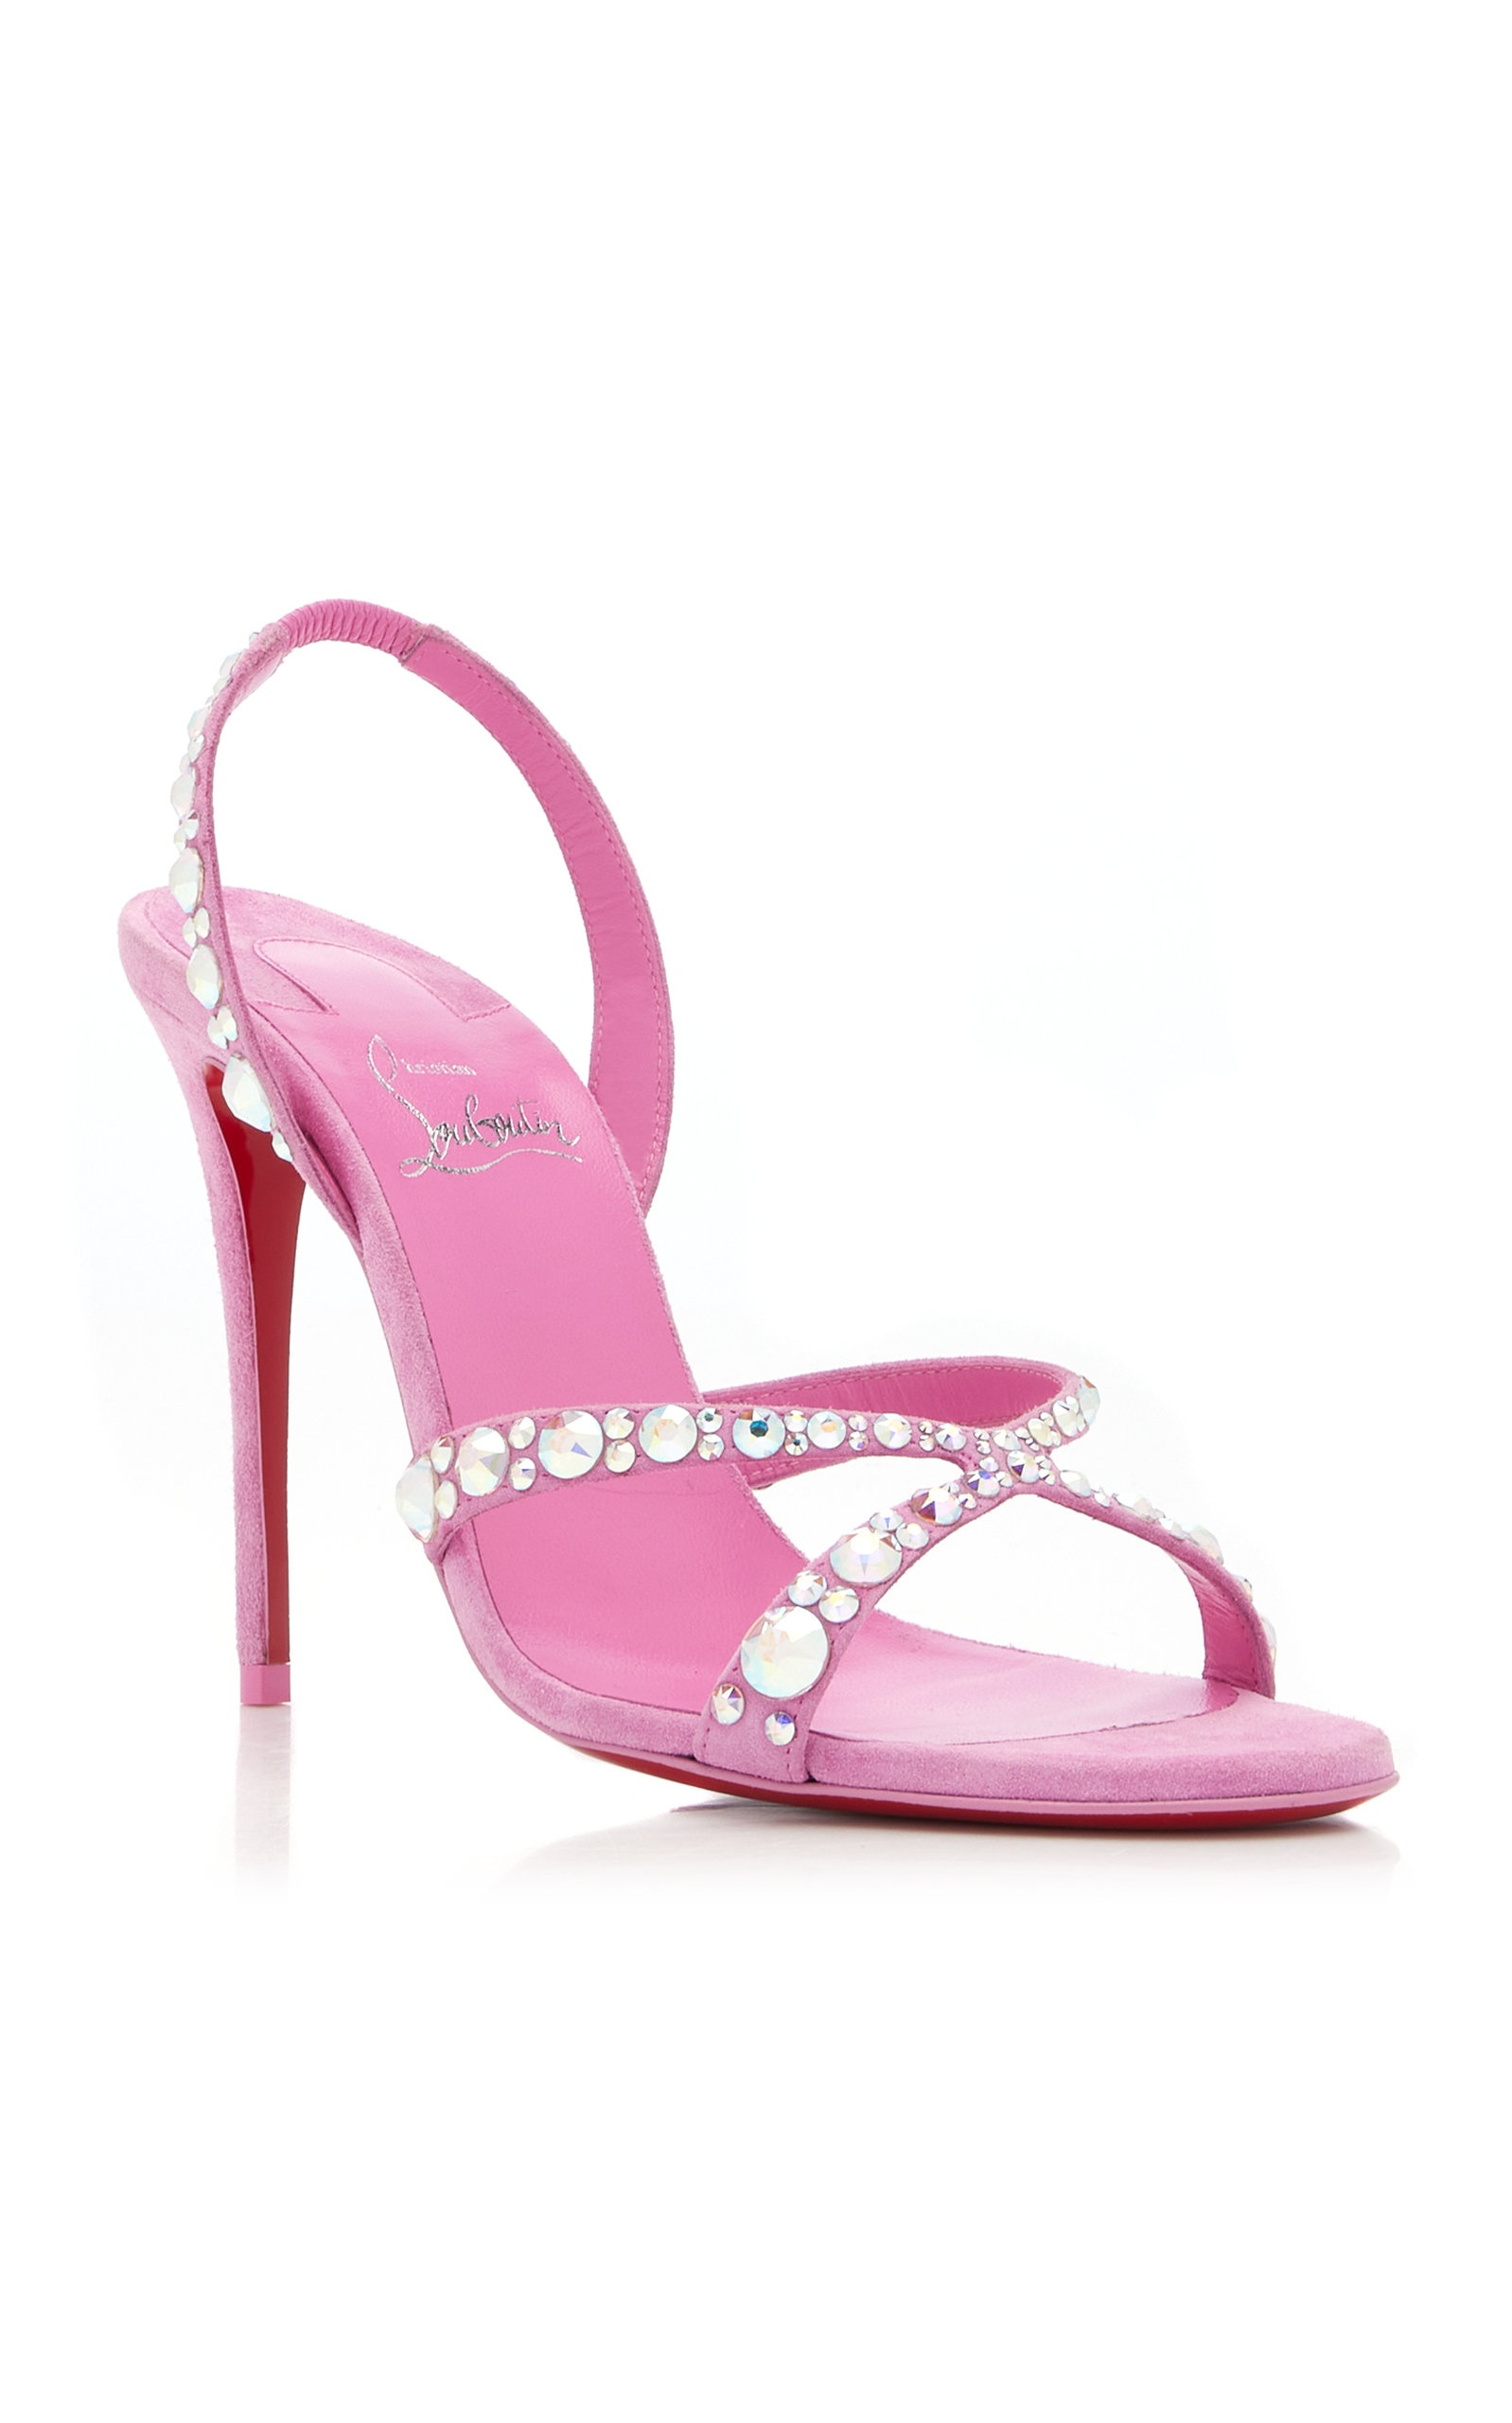 Emilie 100mm Embellished Suede Sandals pink - 8